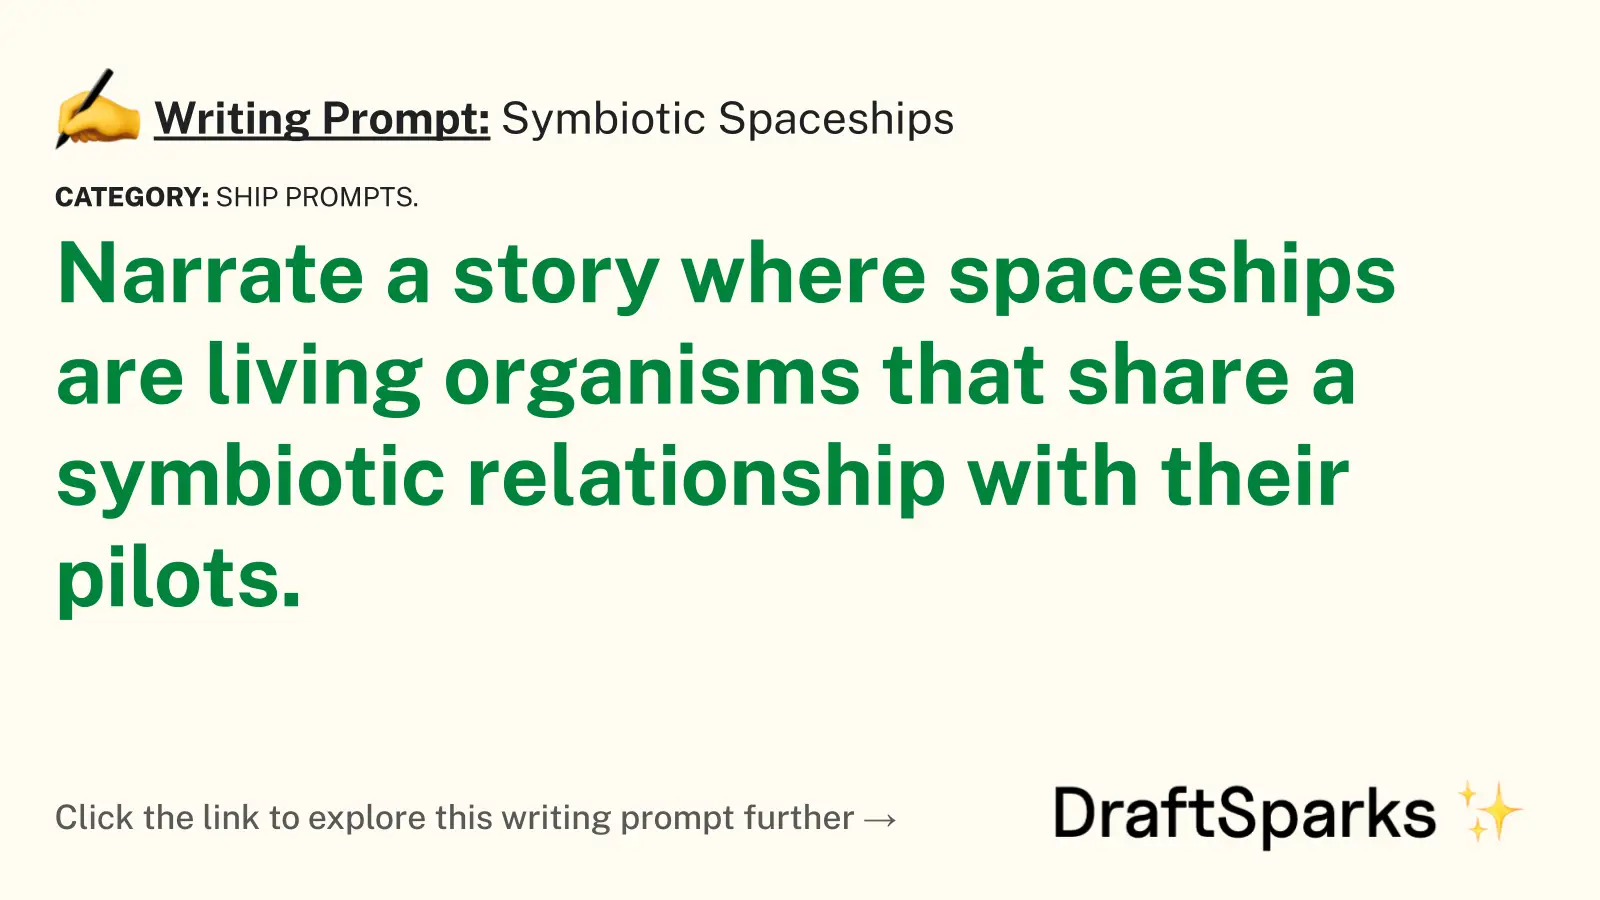 Symbiotic Spaceships